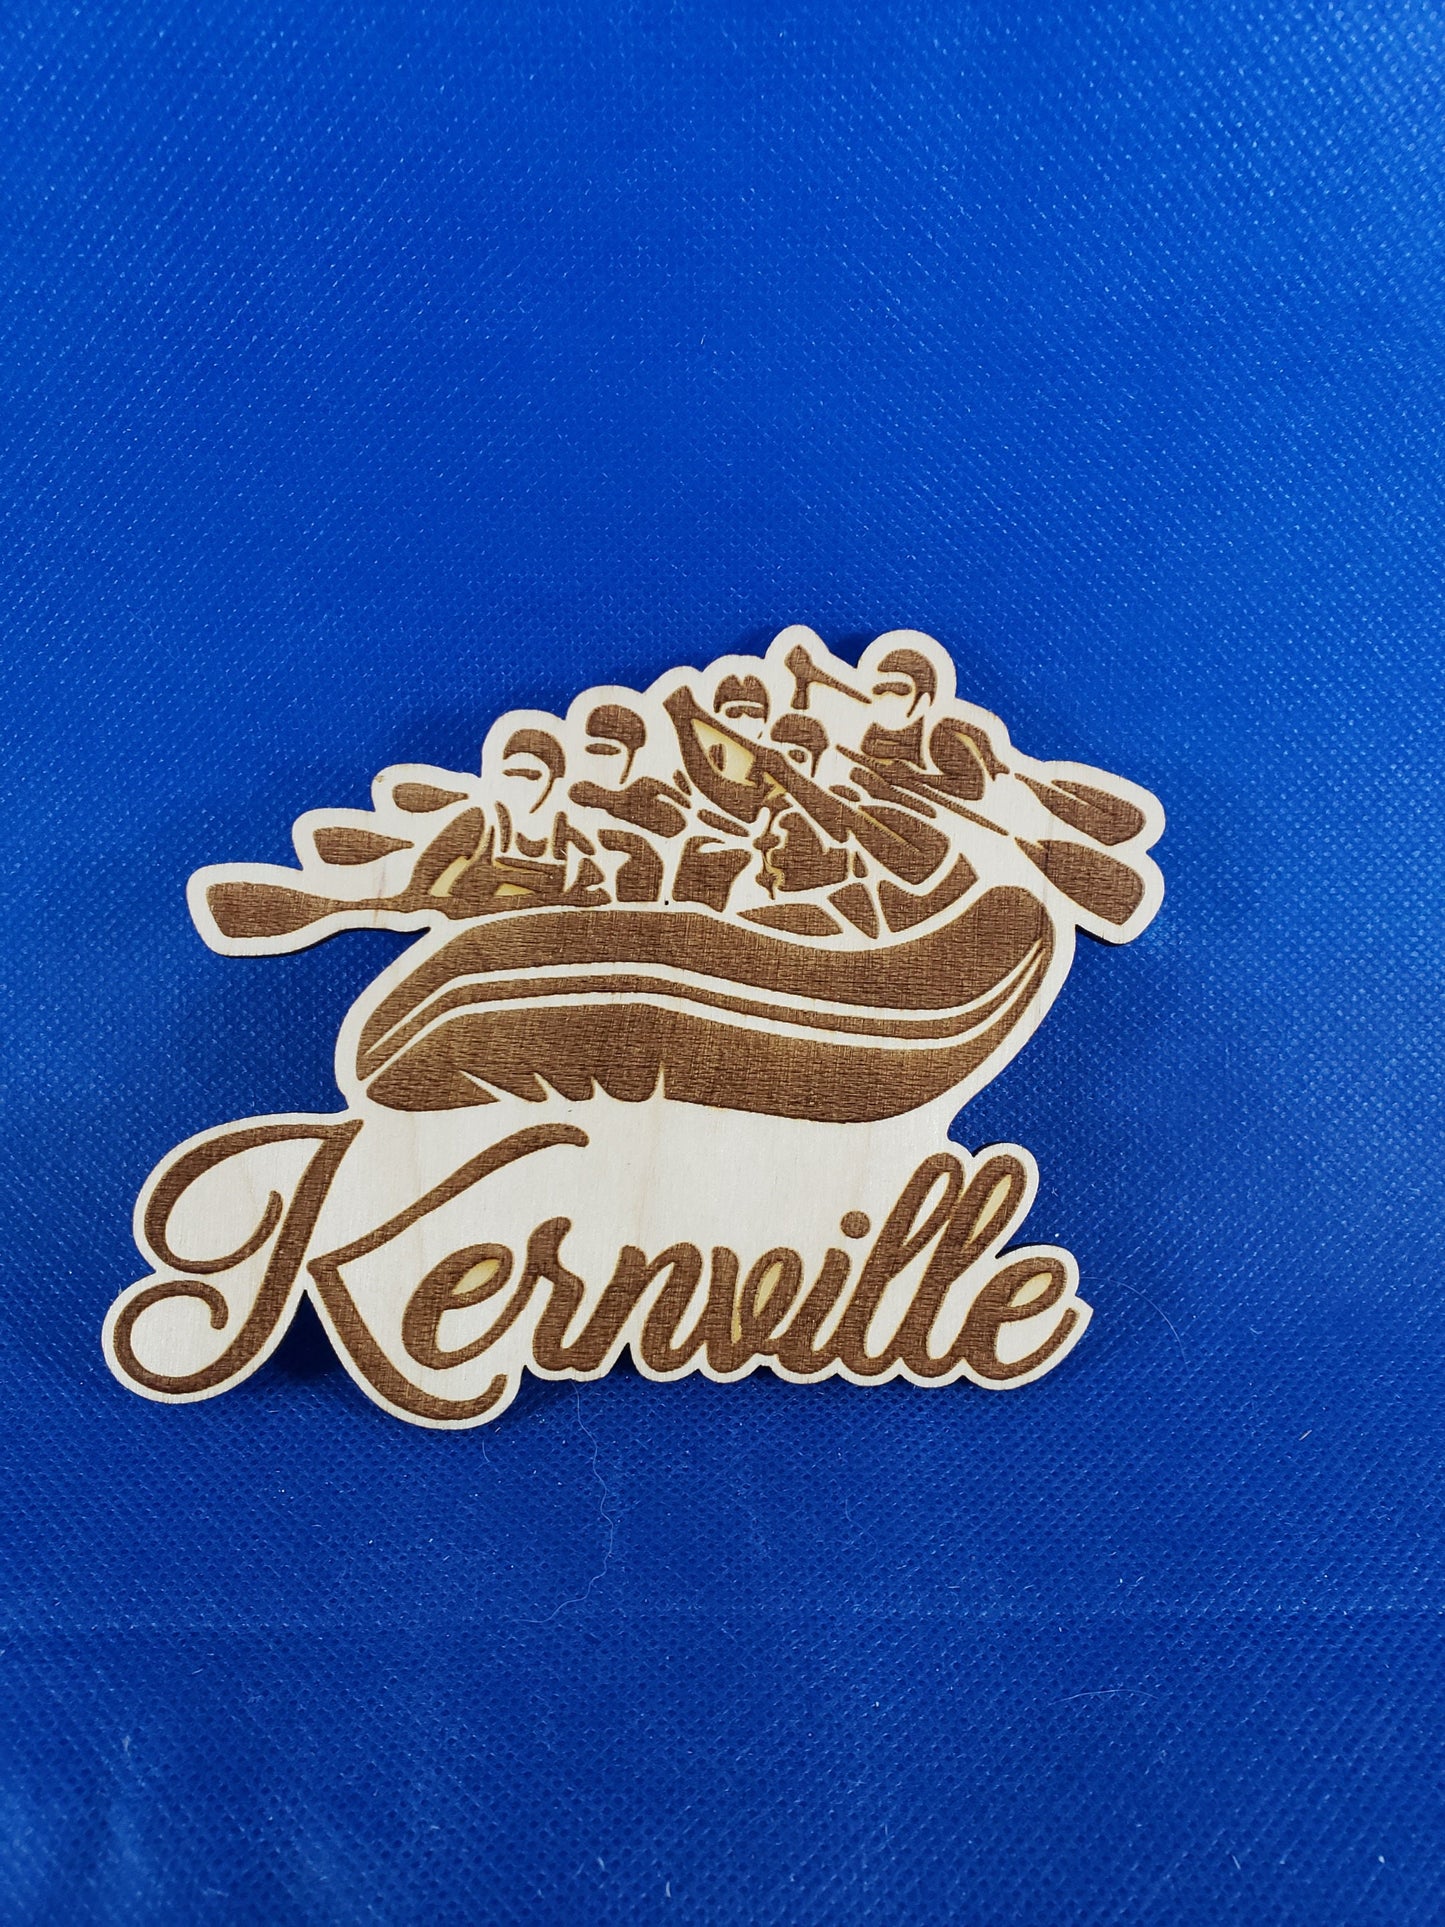 Kernville, Kernriver Whitewater Rafting - Laser cut natural wooden blanks